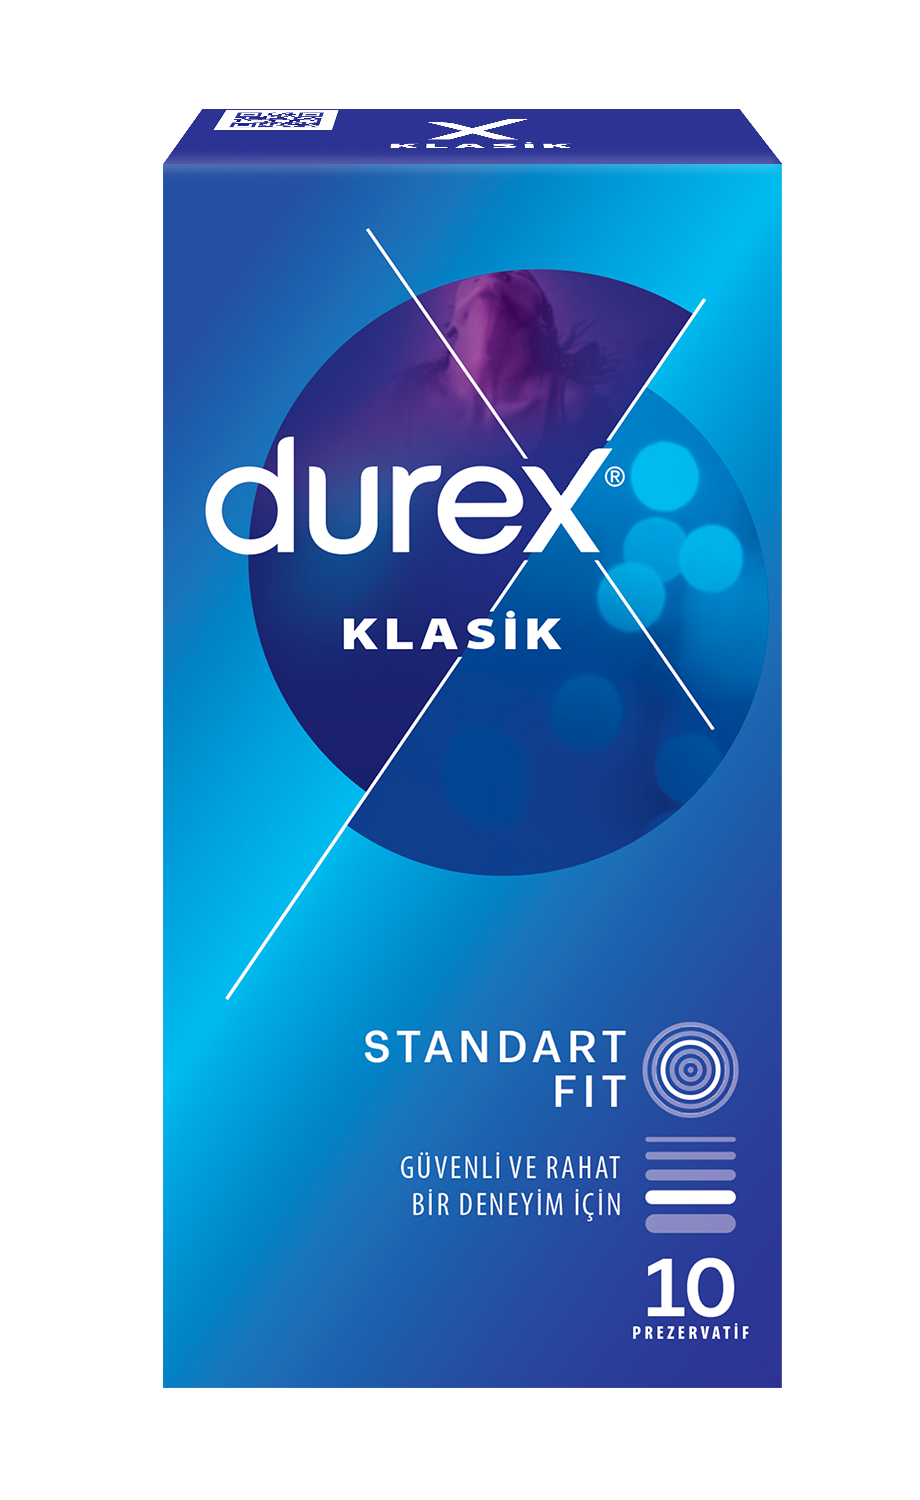 Durex Klasik 10'lu Prezervatif